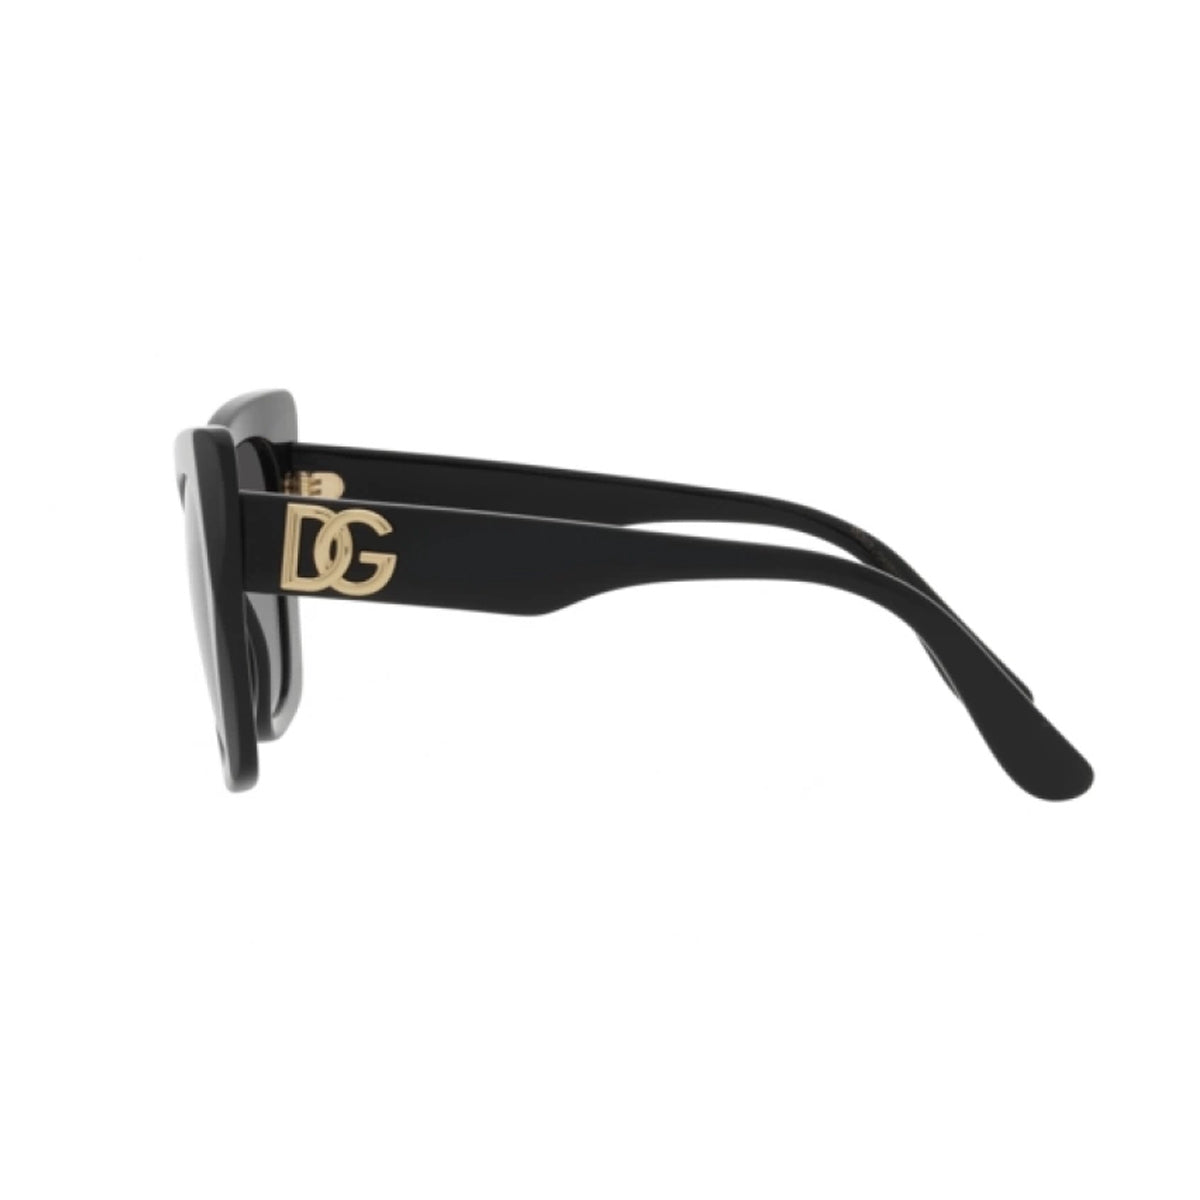 DG4405 501/8G-Occhiali da sole-Dolce & Gabbana-Un nuovo capitolo per la famiglia DG Crossed: materiale in acetato e forme best seller perfettamente combinate con l'iconico monogramma "DG". - Dresso